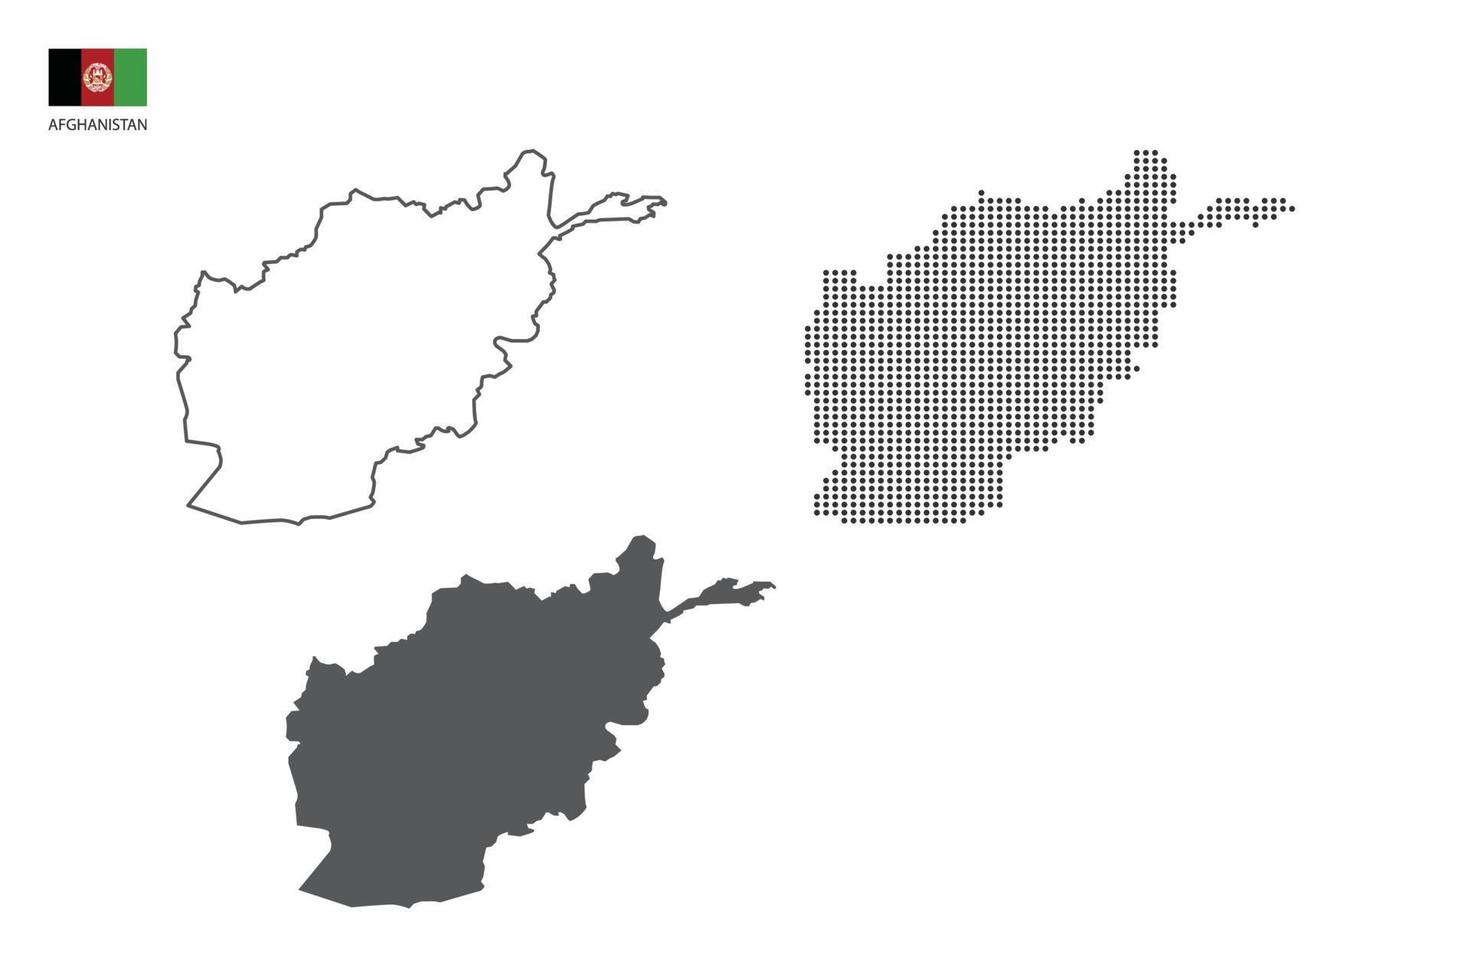 3 versões do vetor da cidade do mapa do afeganistão pelo estilo de simplicidade de contorno preto fino, estilo de ponto preto e estilo de sombra escura. tudo no fundo branco.